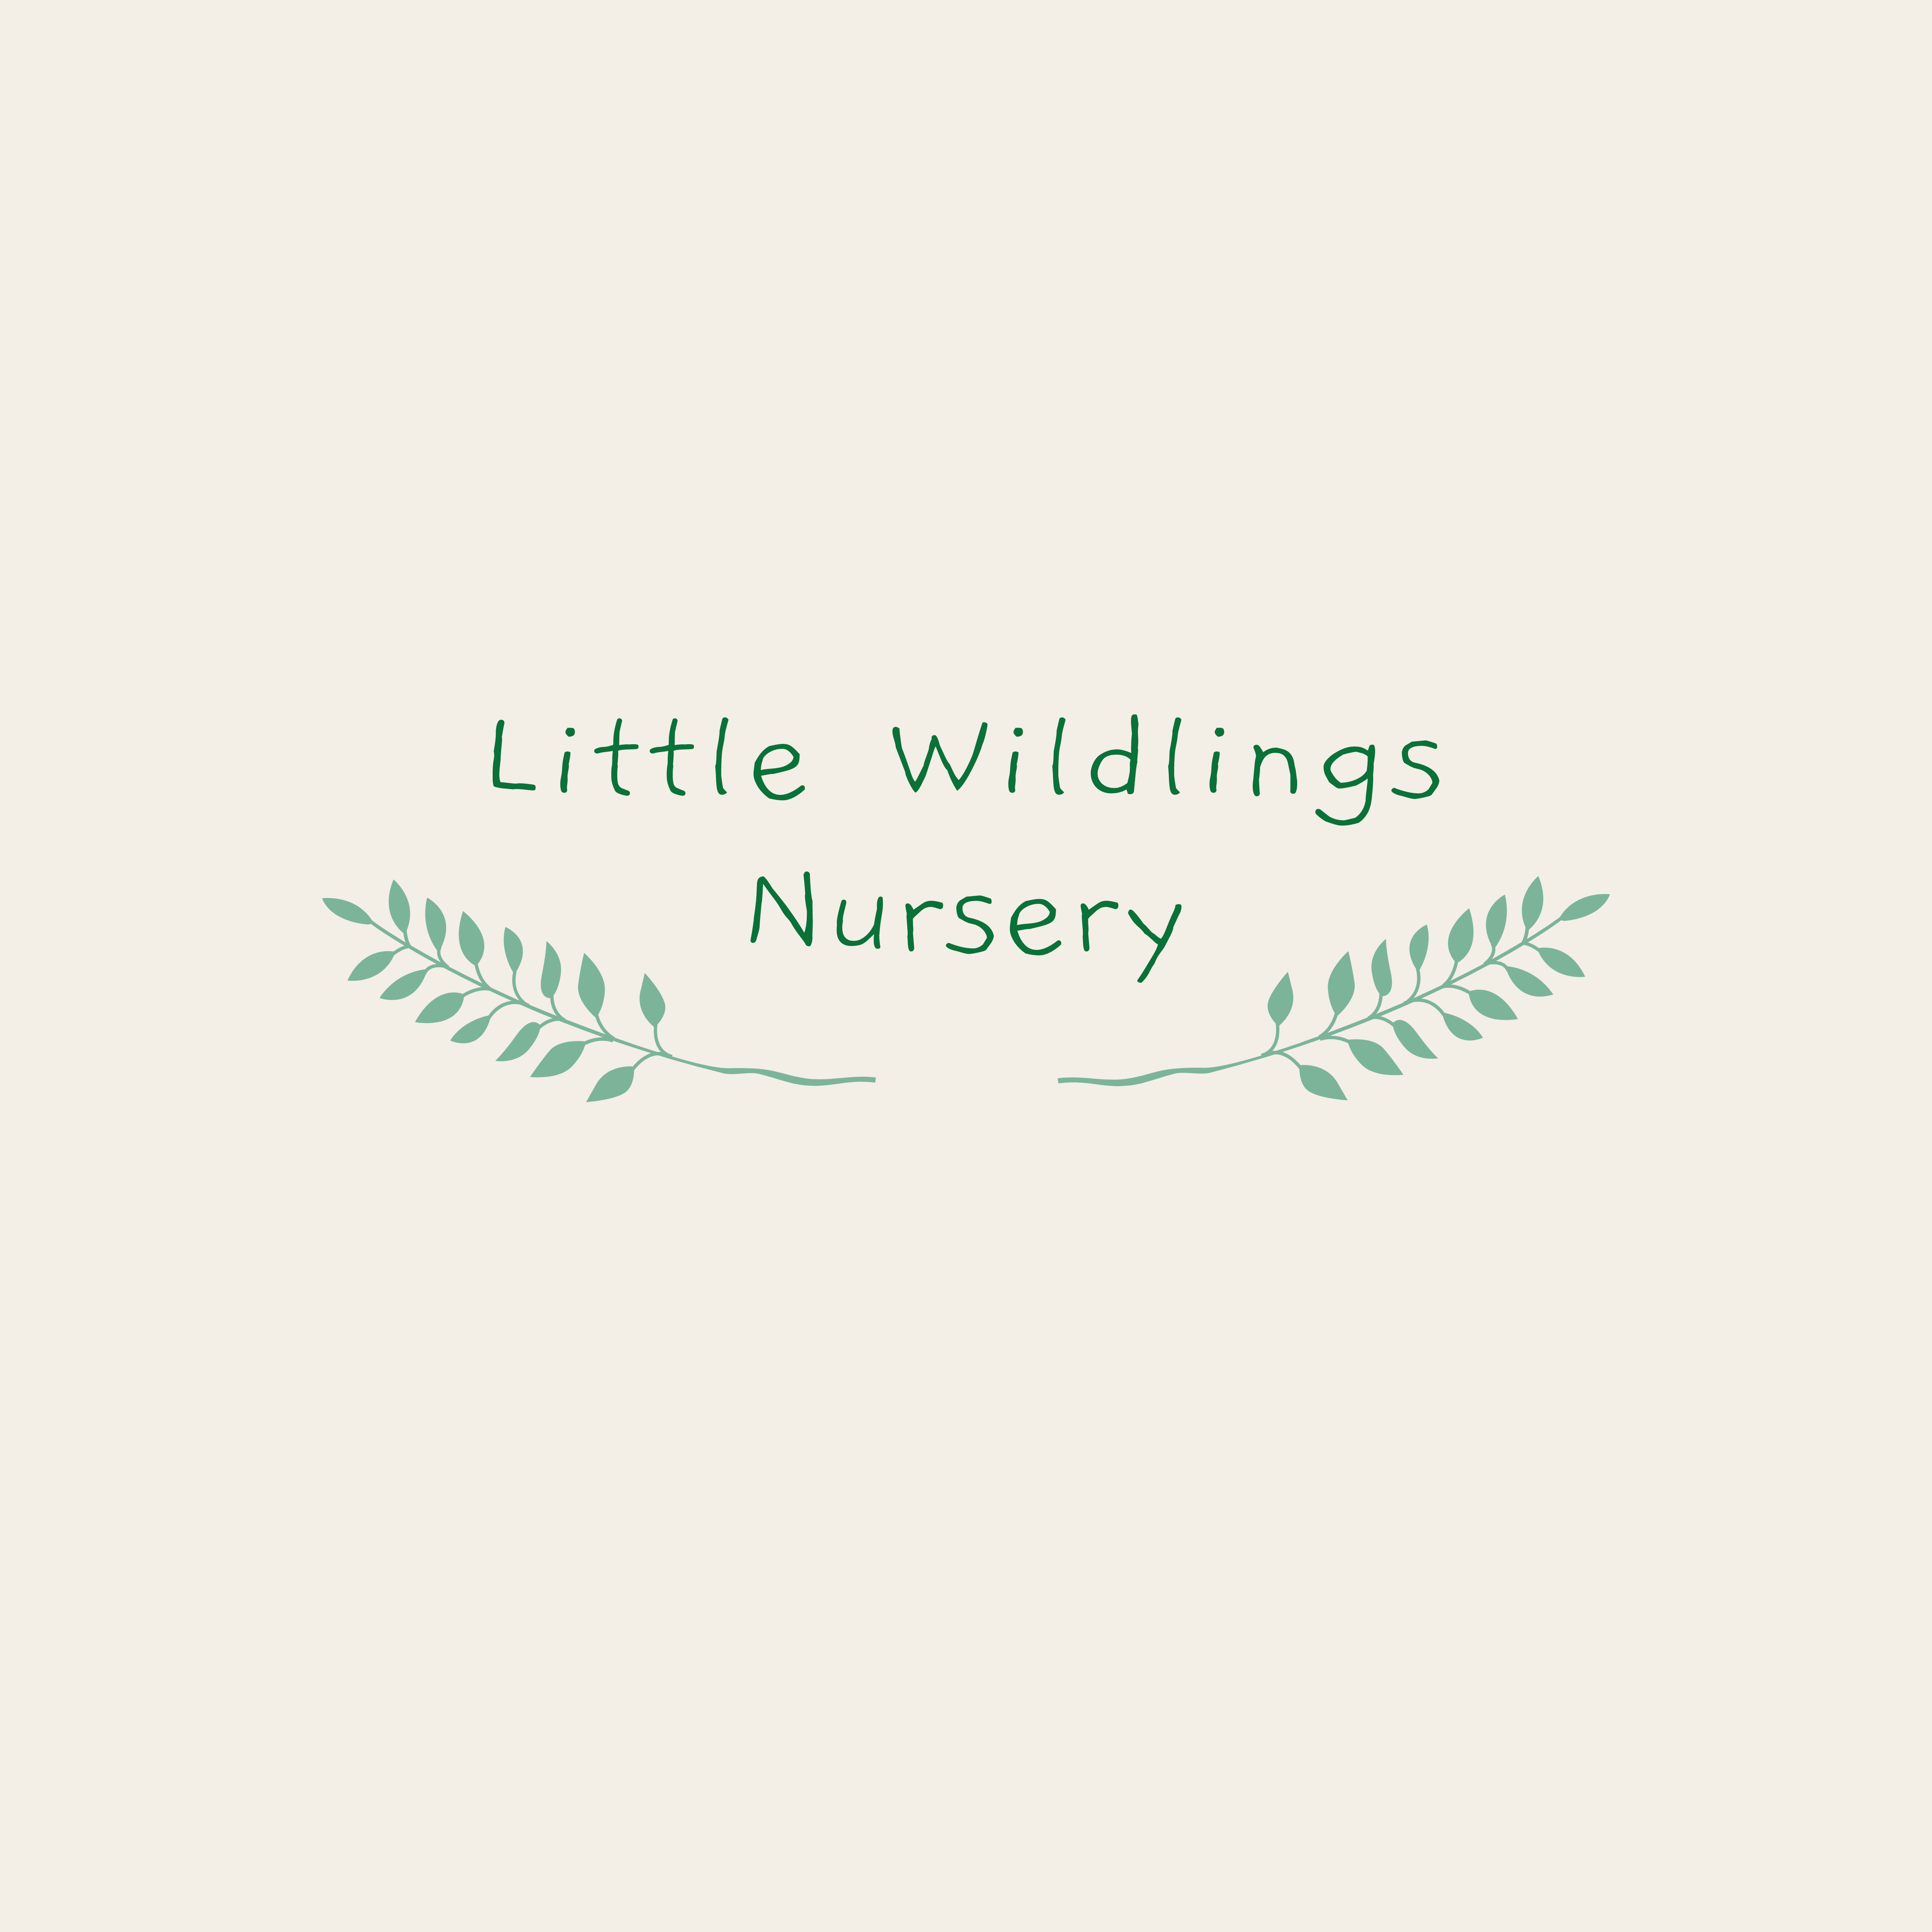 Little Wildlings Nursery Ltd